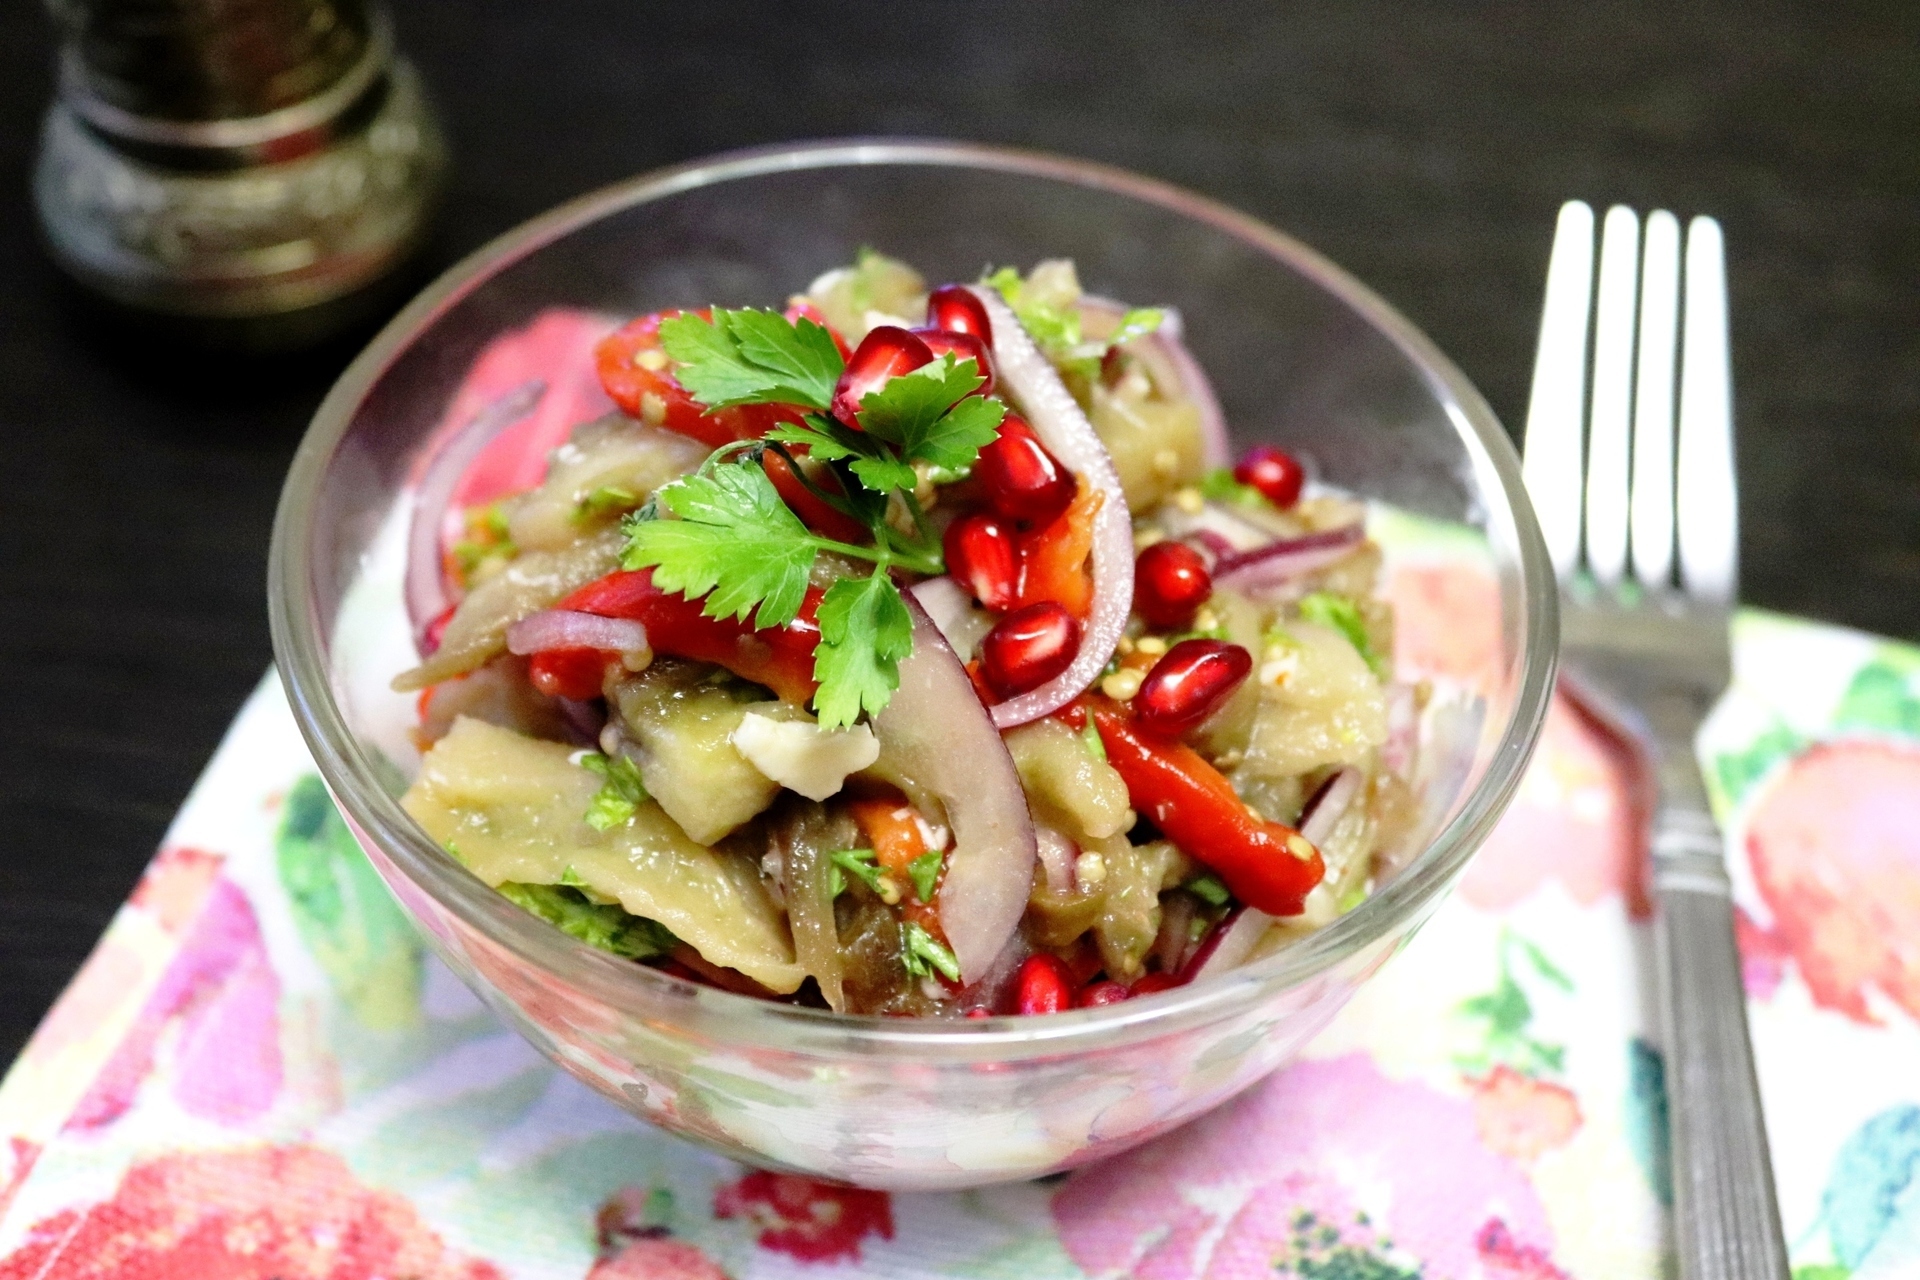 Фото к рецепту: Салат из запечённых баклажанов с грецкими орехами #постныйстол